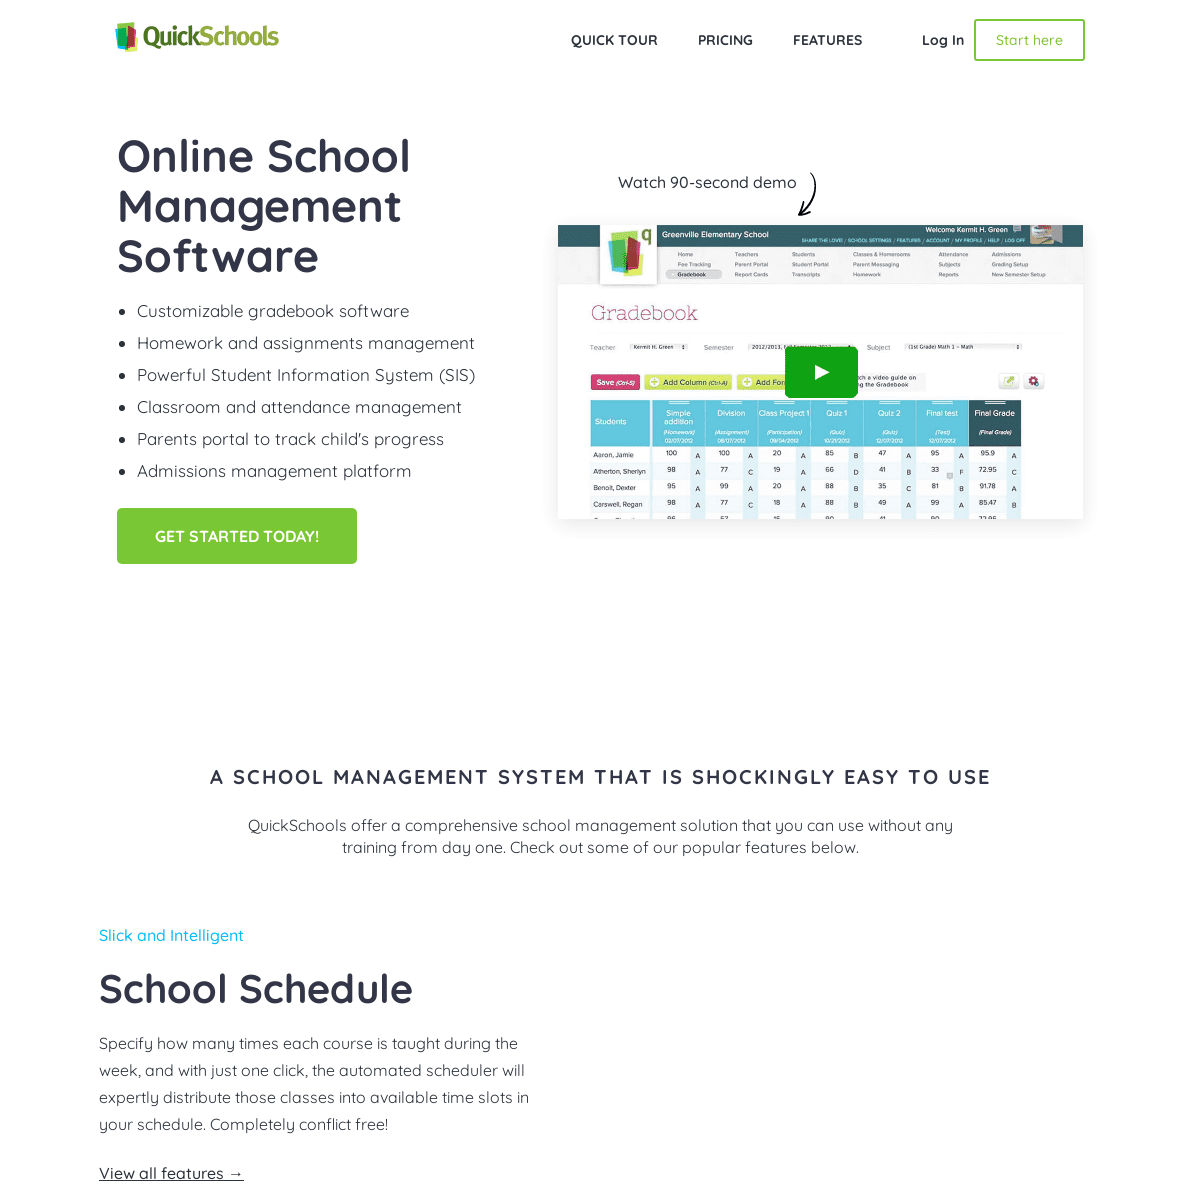 A complete backup of https://quickschools.com